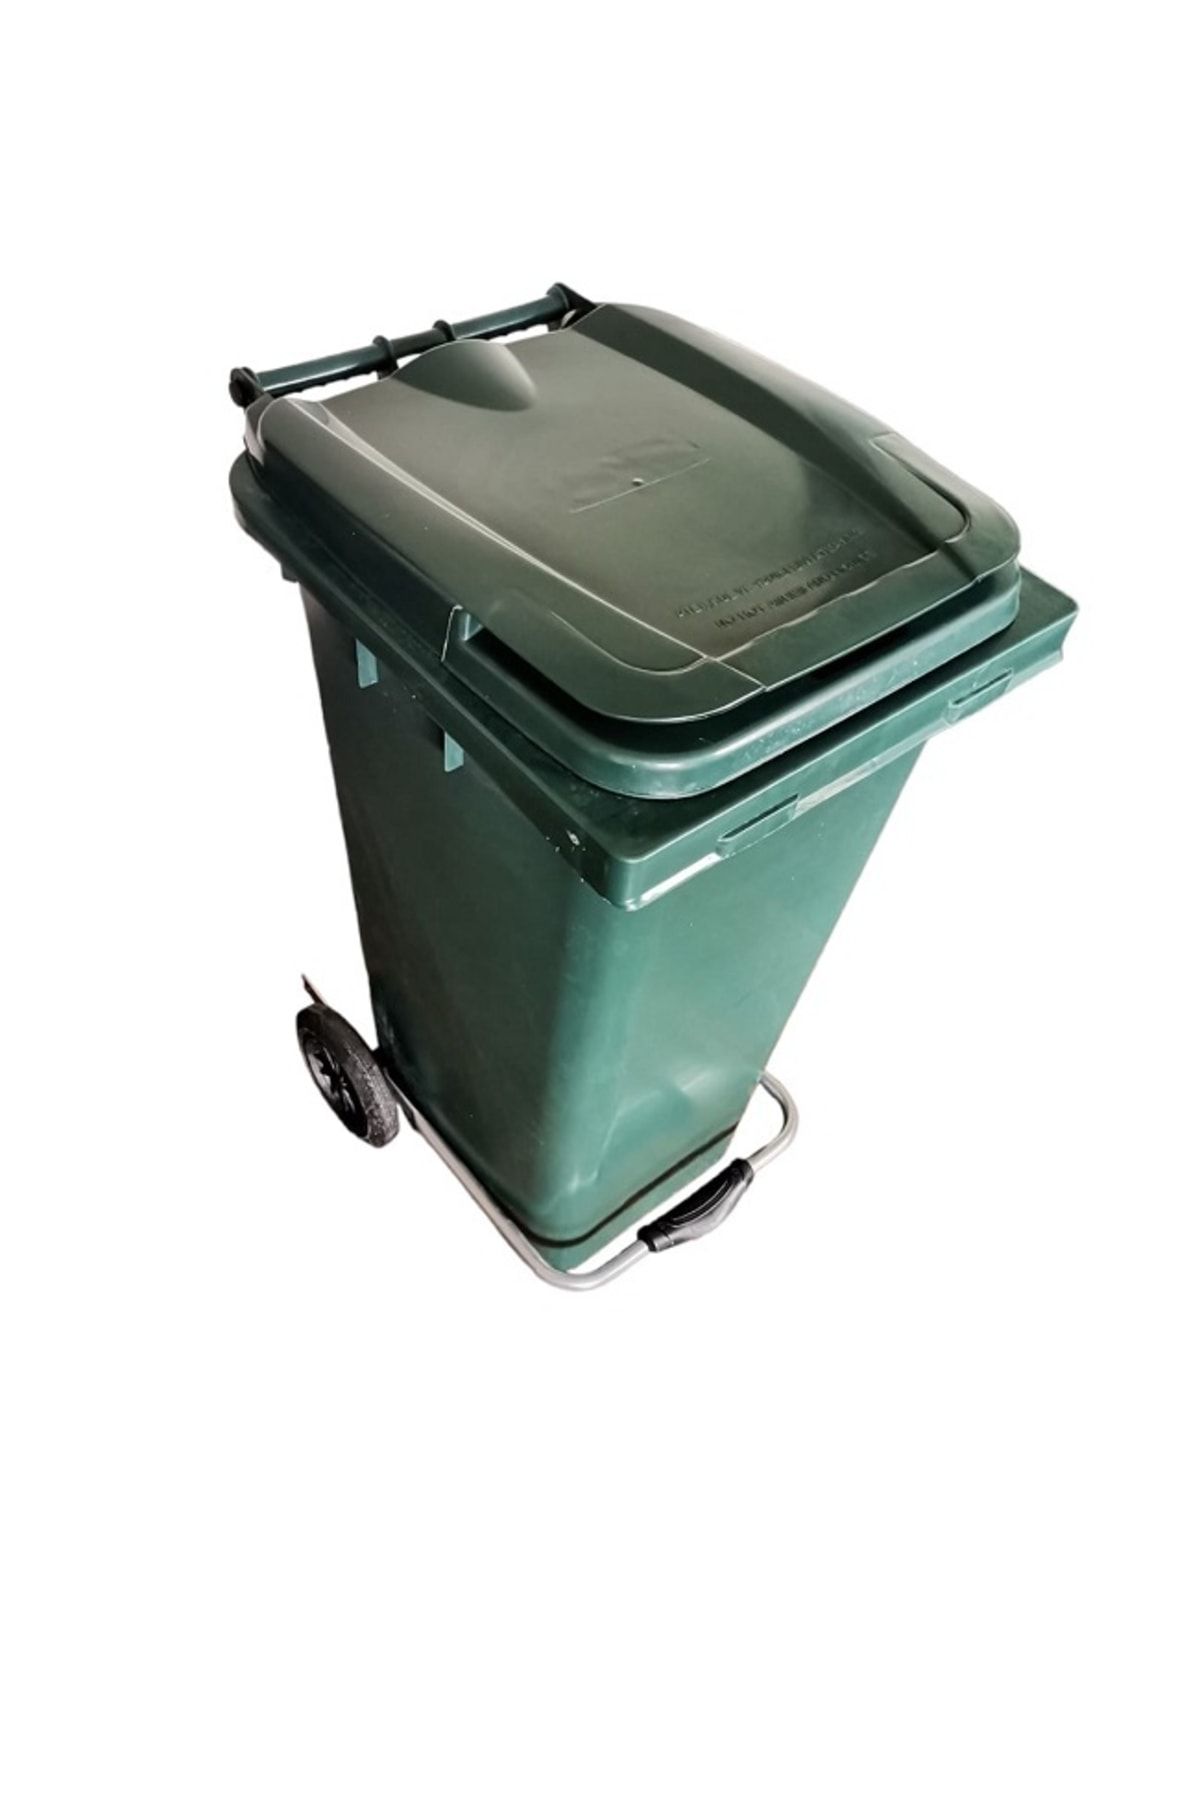 Genel Markalar Tekerlekli Demir Pedallı Sağlam Kapaklı Tutma Saplı Özel Çöp Konteyneri 120 Lt ( Yeşil ) Büyük Boy